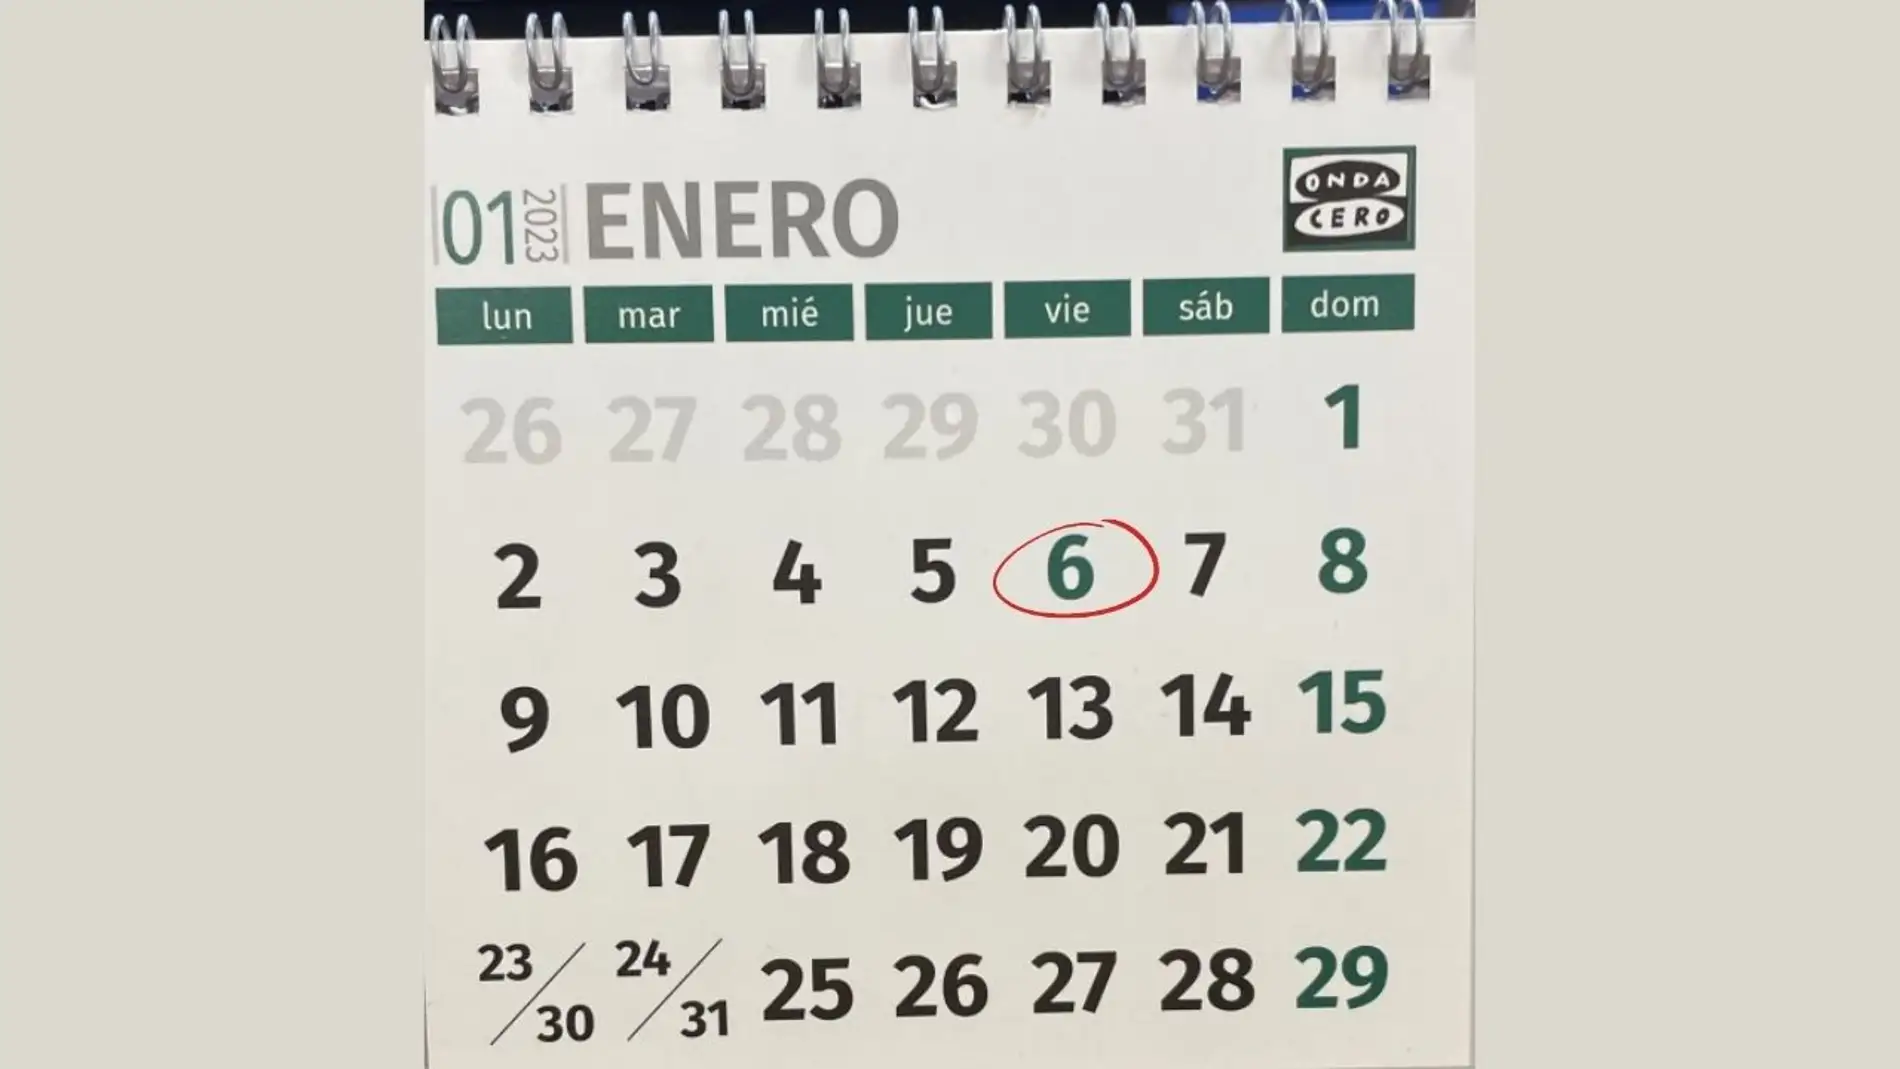 Calendario laboral: las provincias en las que es festivo el 6 de enero